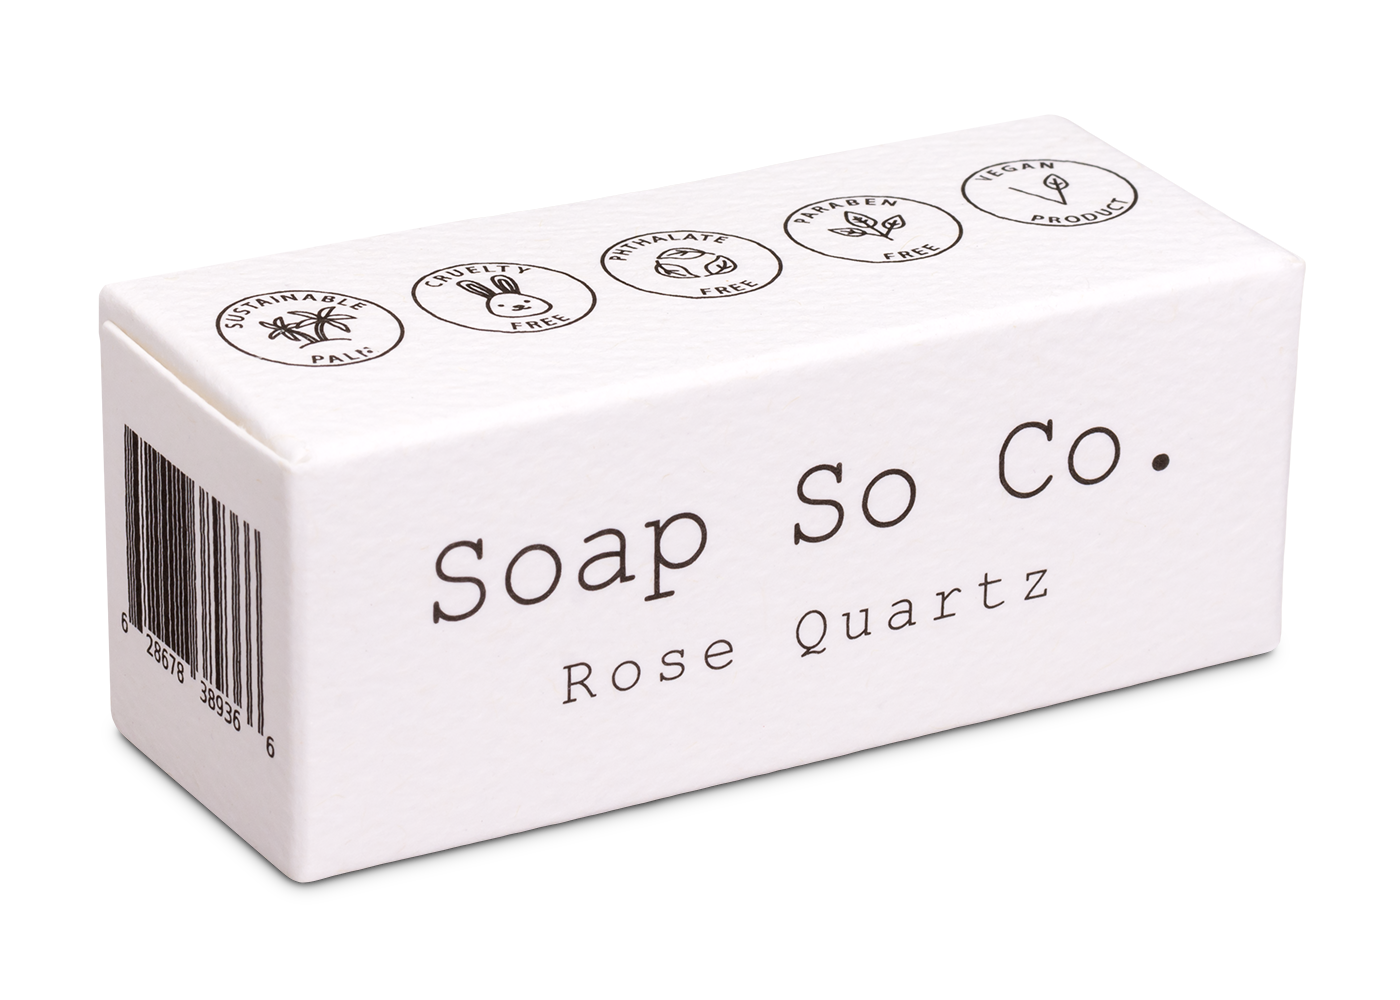 ROSE QUARTZ - MINI - Soap So Co.